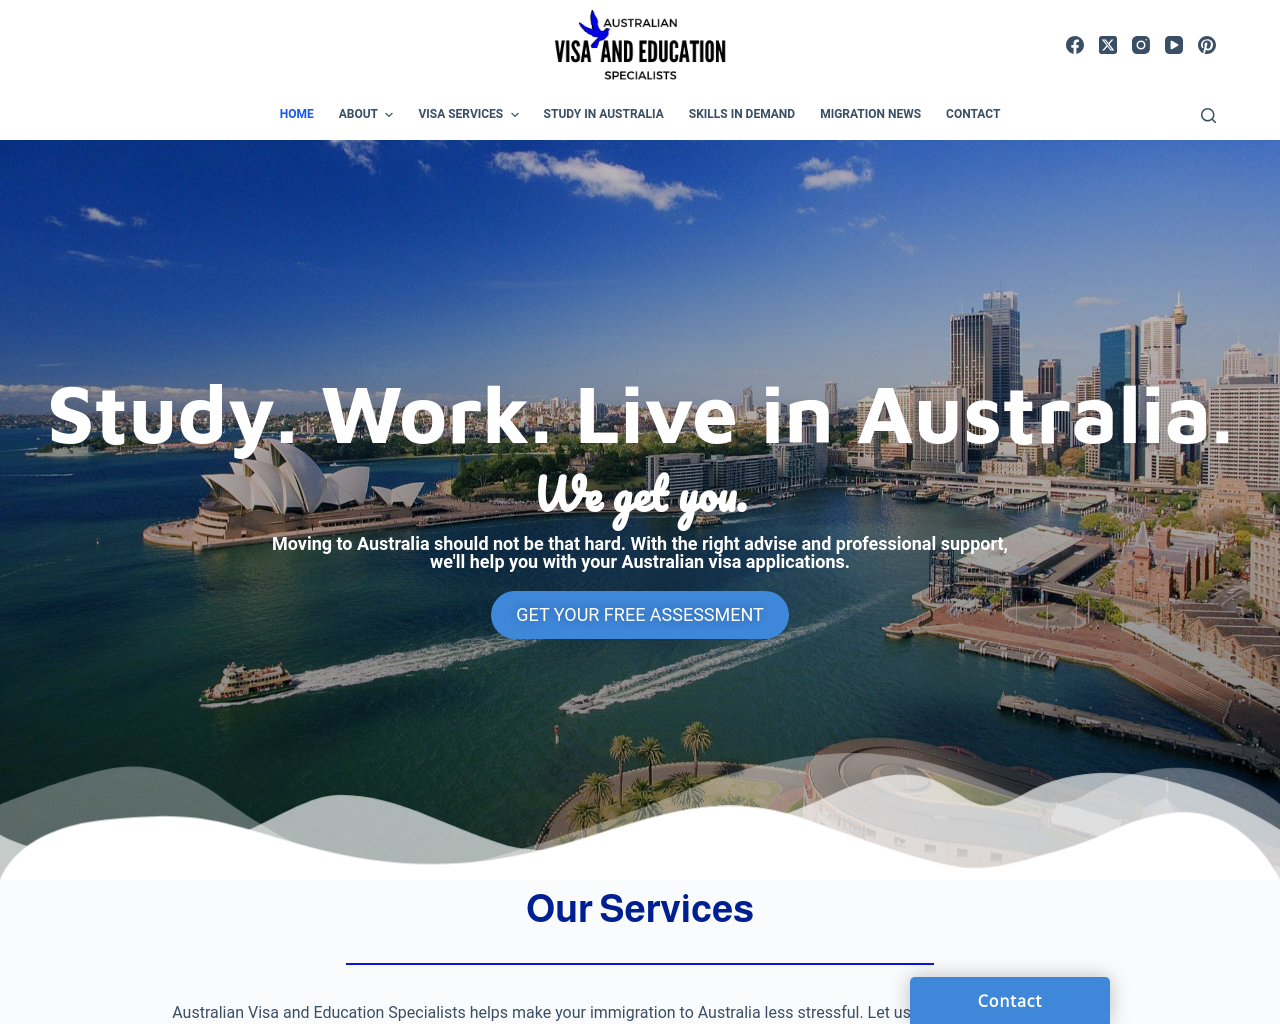 australianvisaandeducation.com.au